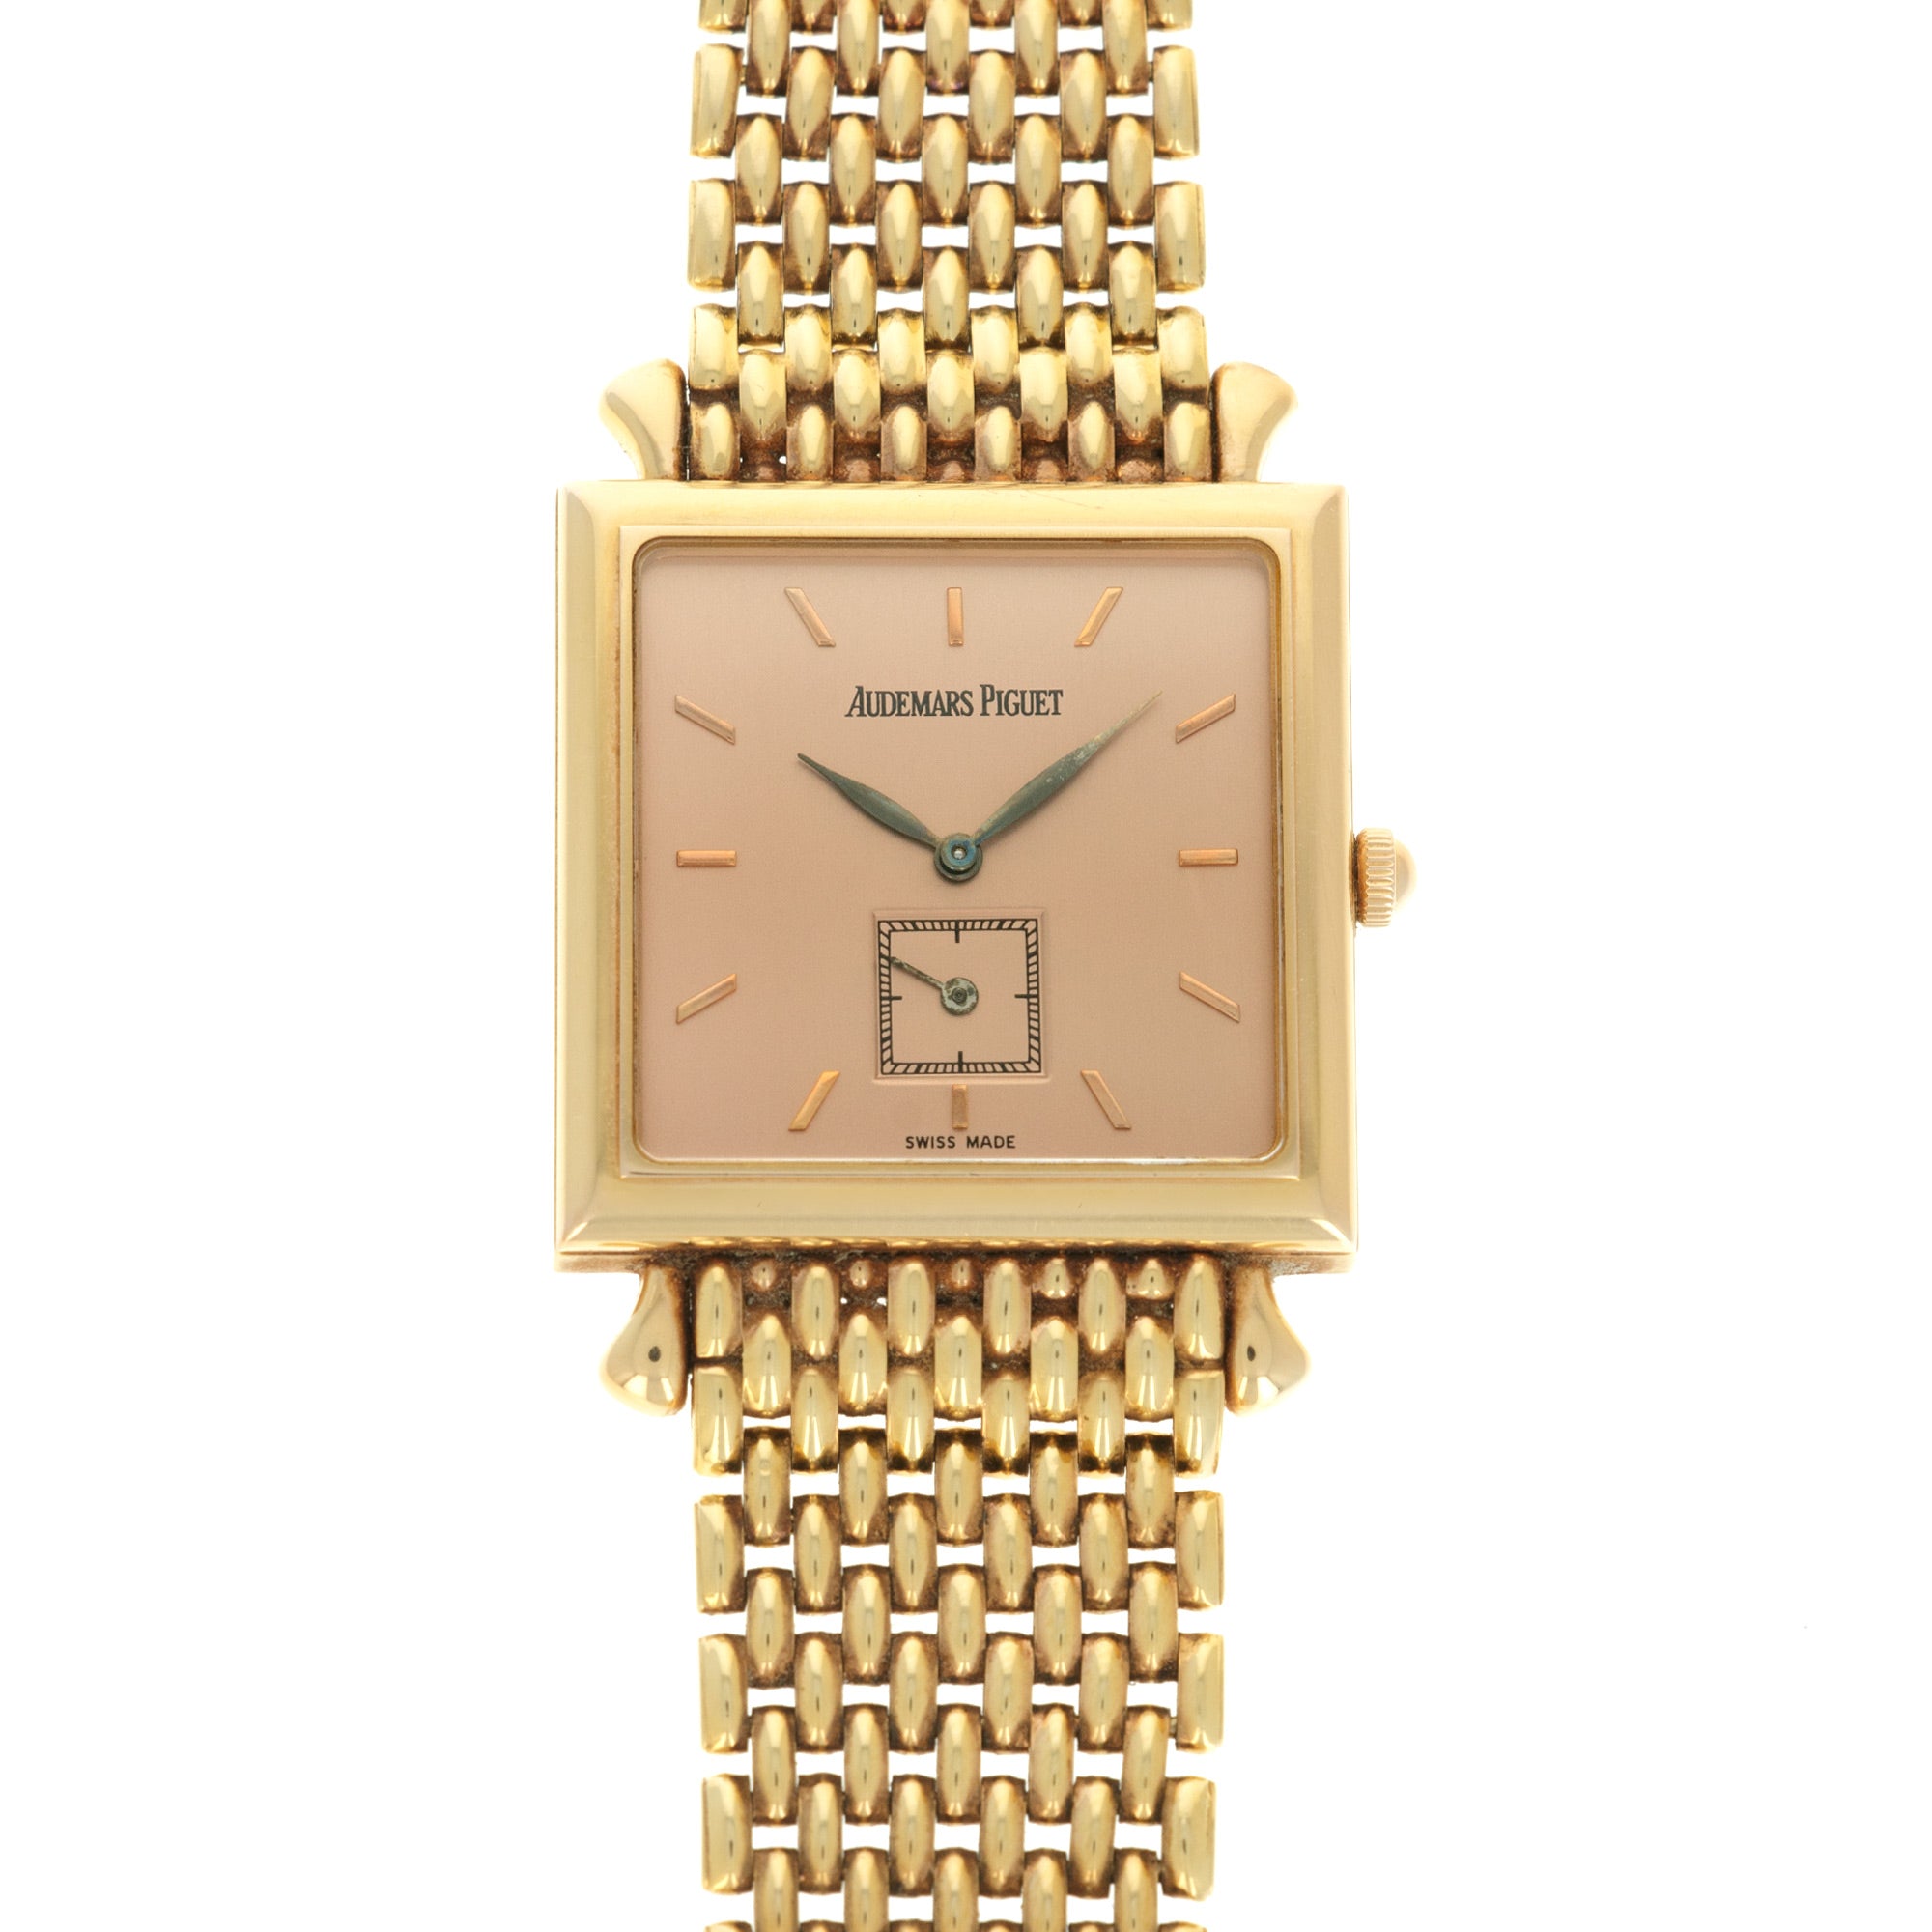 Audemars Piguet - Audemars Piguet Rose Gold Bracelet Watch - The Keystone Watches